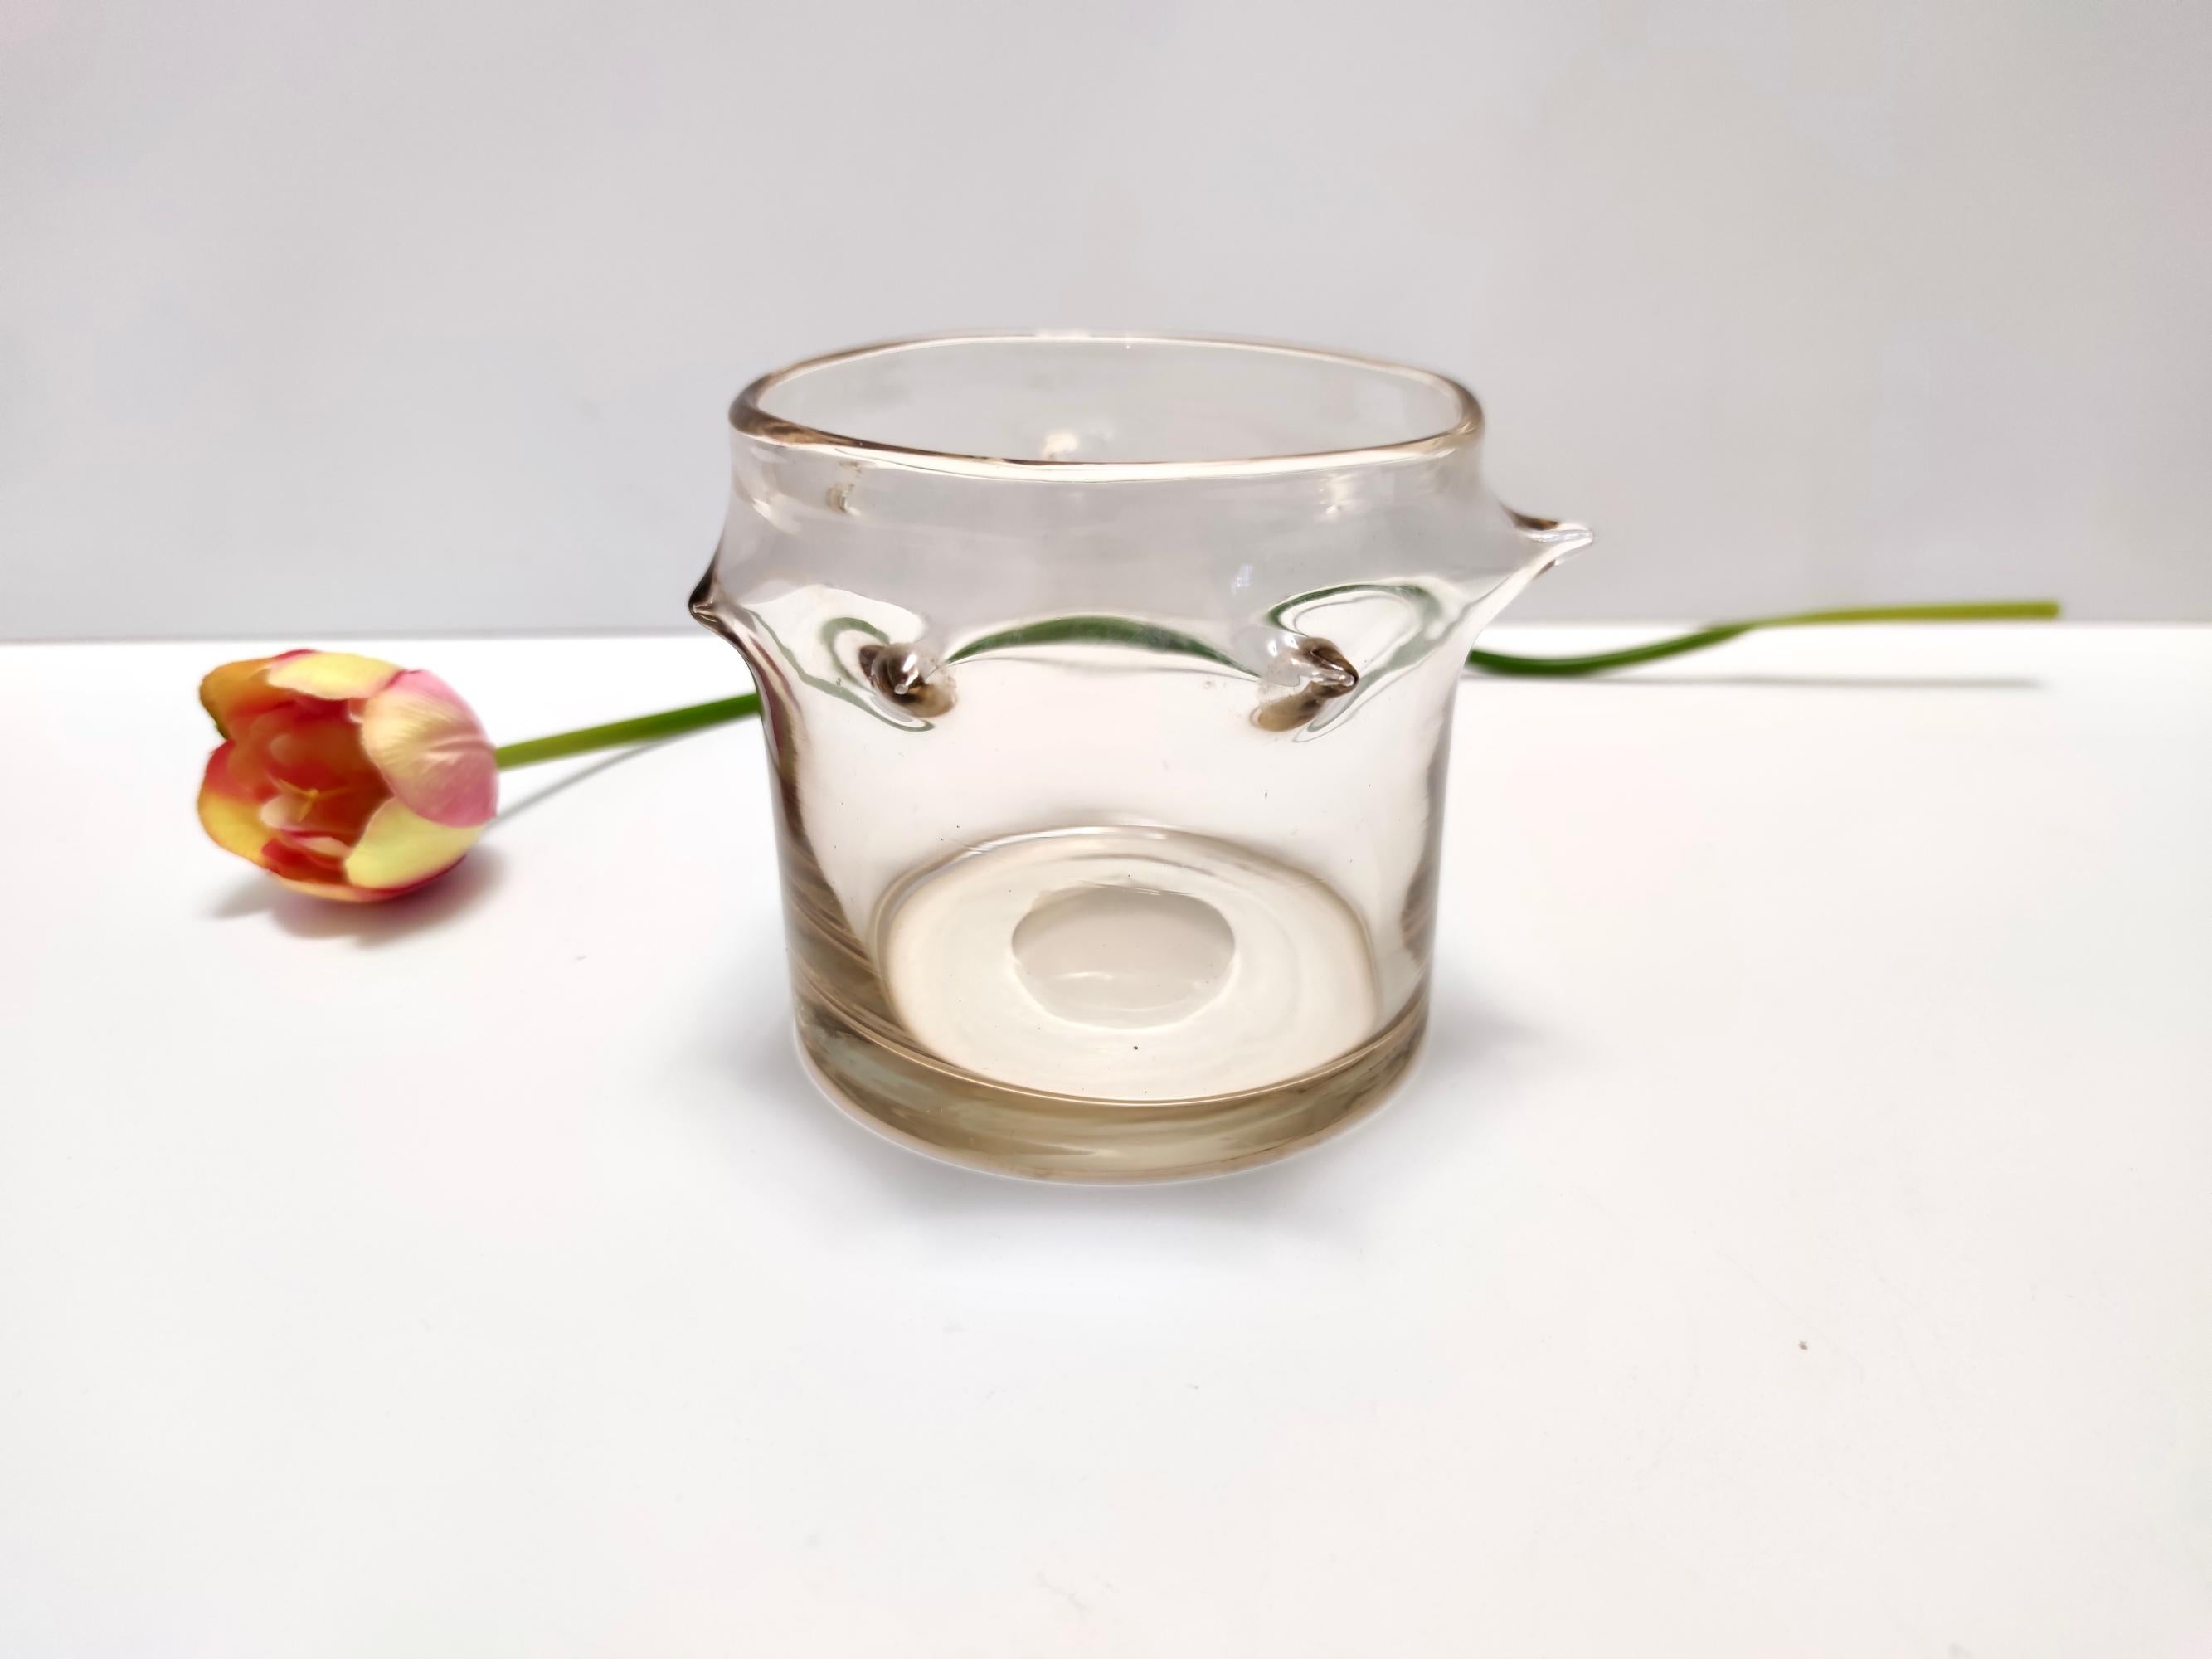 Hergestellt in Italien, 1930er - 1940er Jahre. 
Diese Vase ist aus Murano-Glas hergestellt.
Da es sich um einen Vintage-Artikel handelt, kann er leichte Gebrauchsspuren aufweisen, wie z. B. einen leichten Kratzer an einer Spitze, aber er ist in